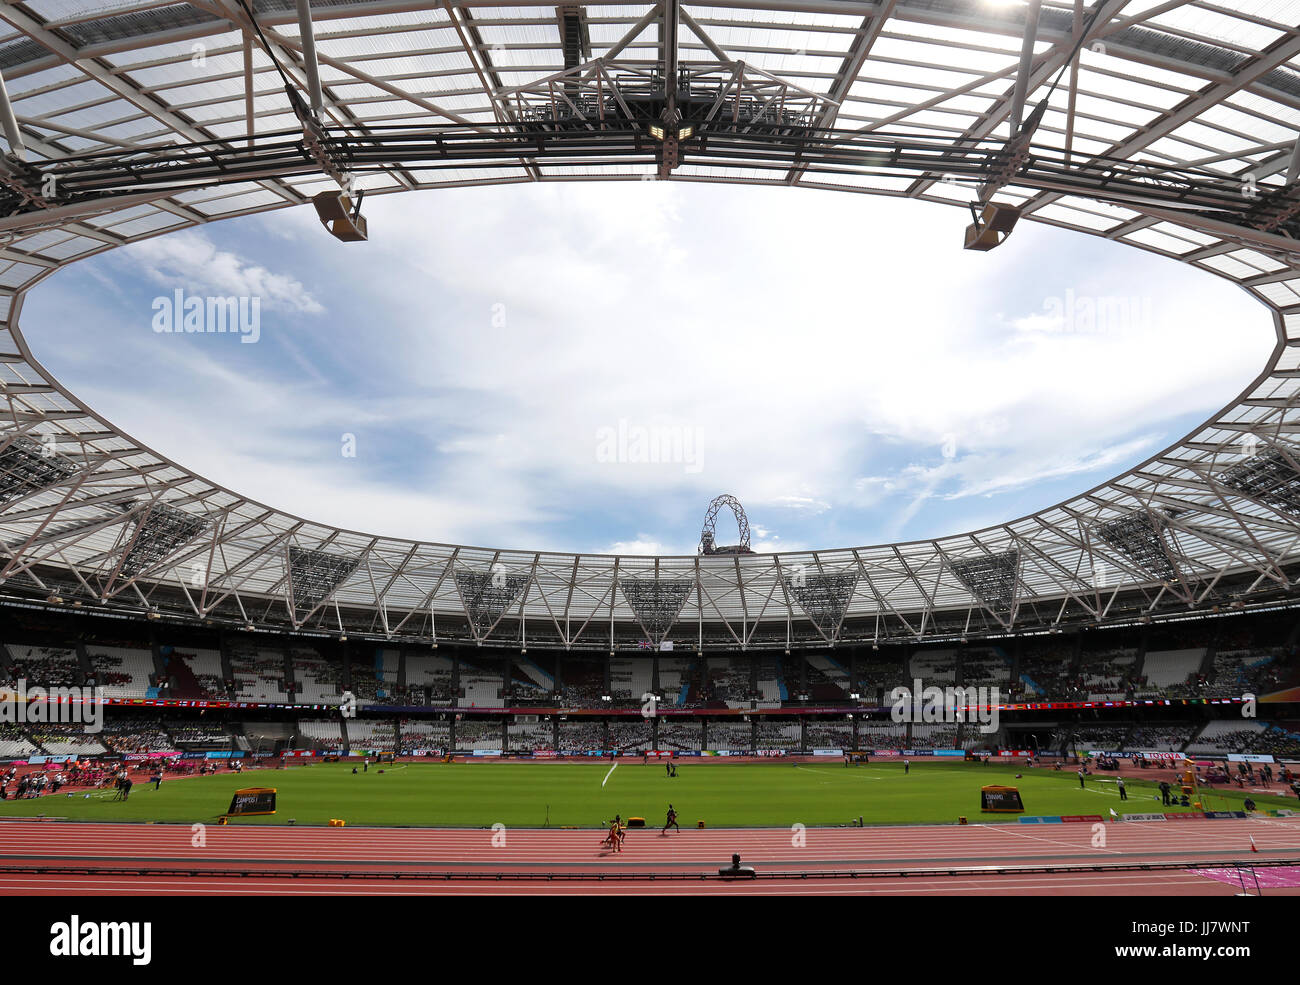 Aktion von der Frauen 100m T11 Runde 1 Wärme 2/2 tagsüber fünf der 2017 Para Leichtathletik-Weltmeisterschaft in London Stadium. Stockfoto